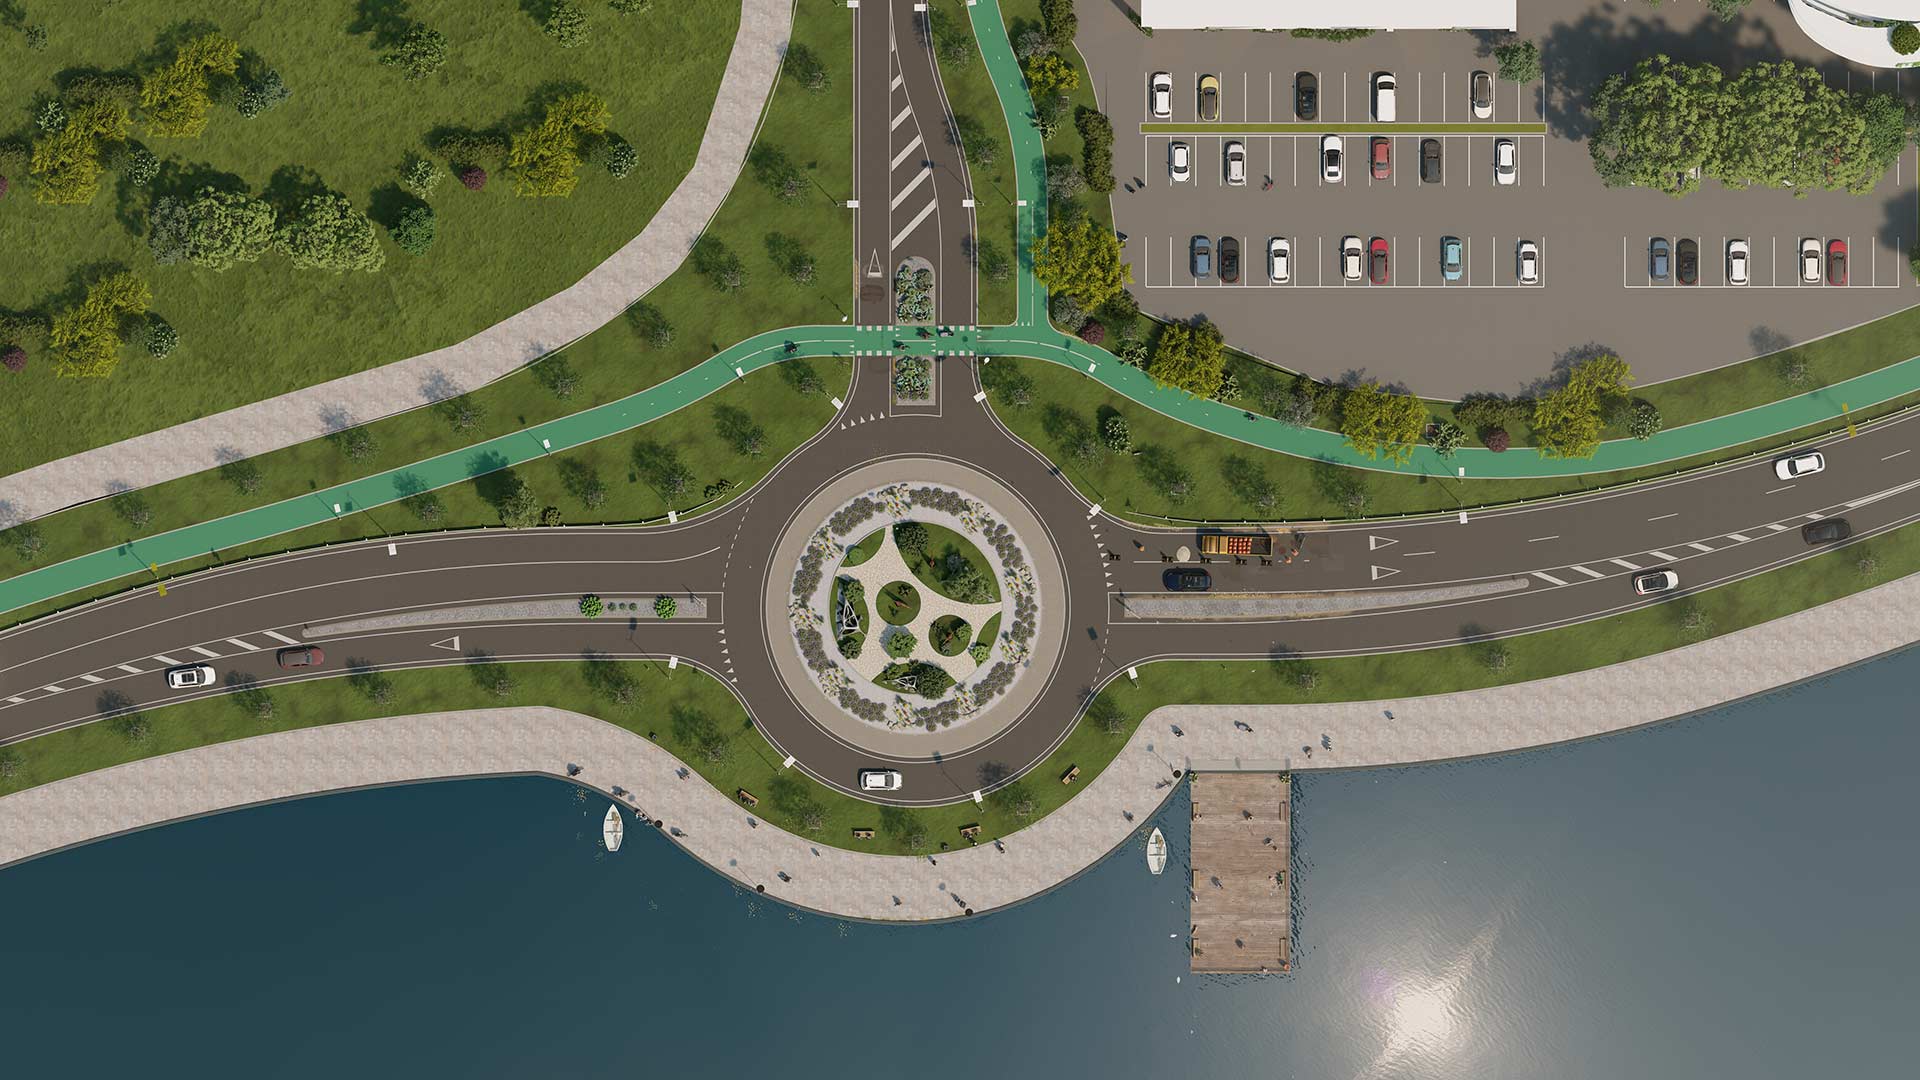 Architectes-Collectivites-projet-aménagement-urbain-perspective-3D-plan-masse-rond-point